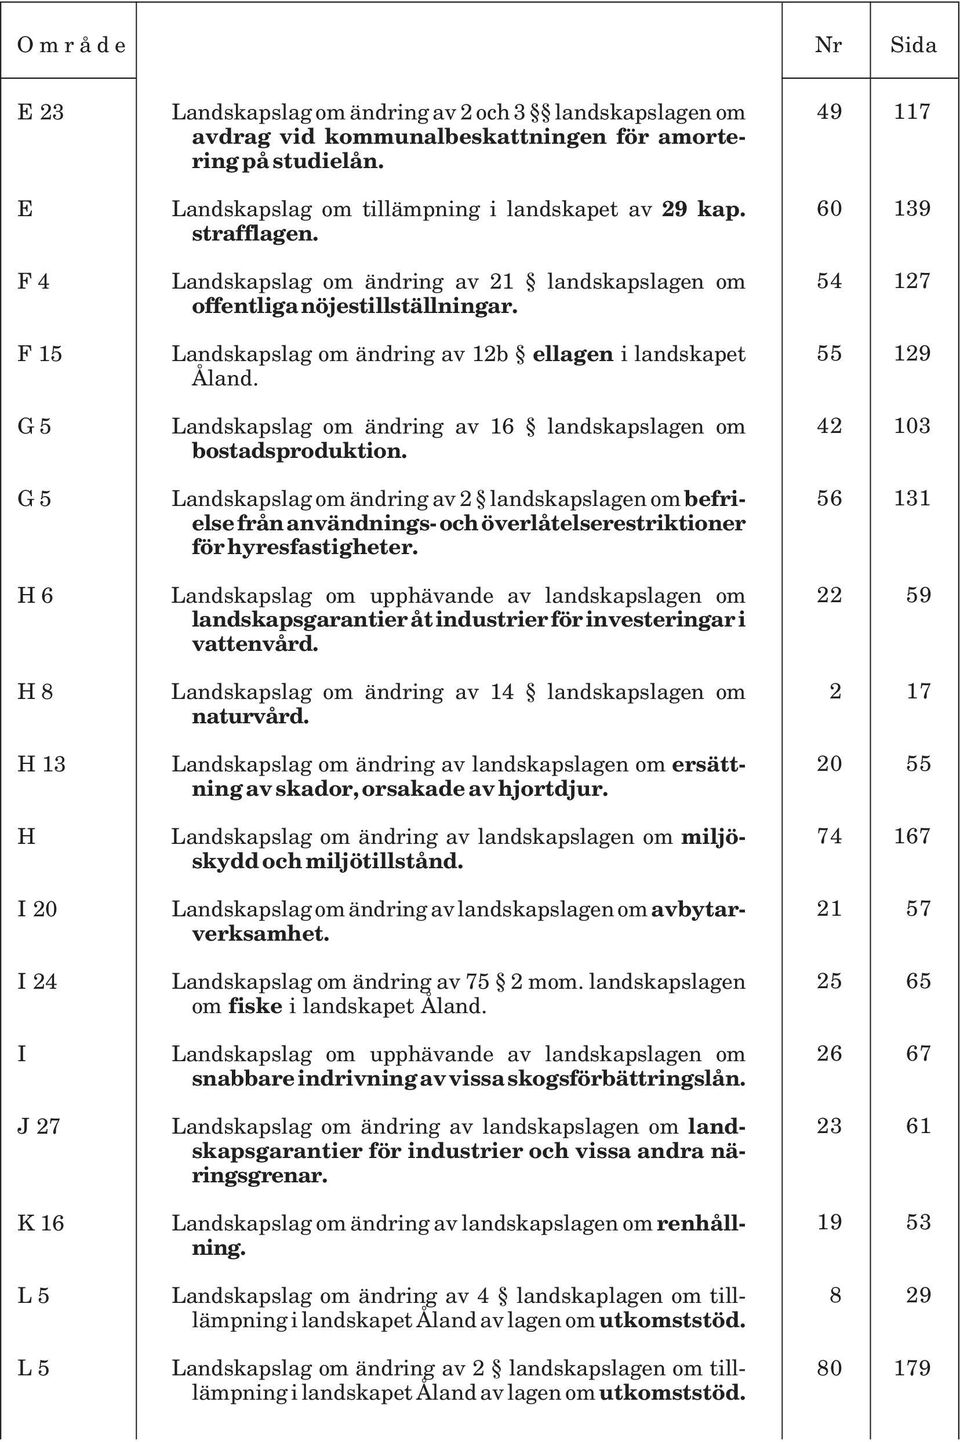 Landskapslag om ändring av 12b ellagen i landskapet Åland. Landskapslag om ändring av 16 landskapslagen om bostadsproduktion.